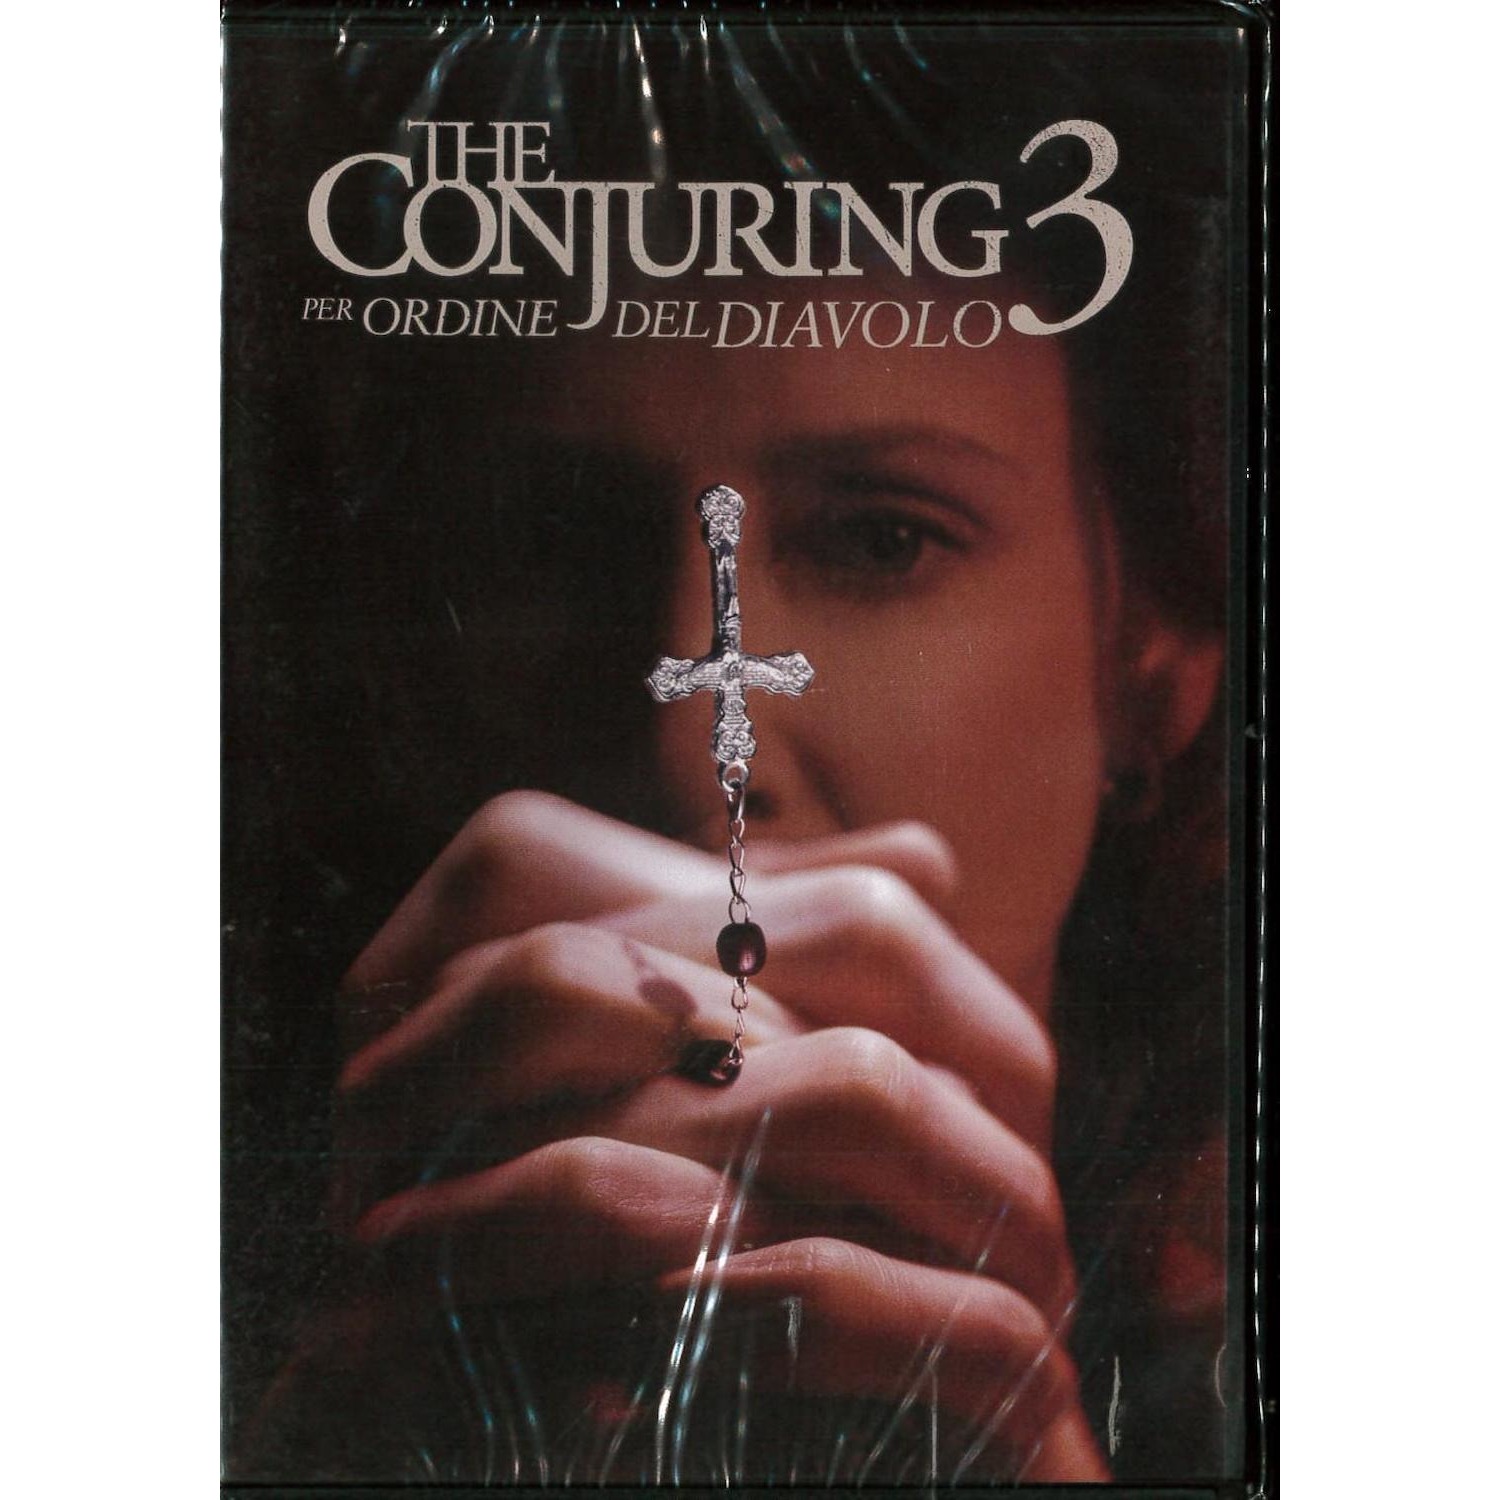 Immagine per DVD The Conjuring 3 - Per ordine del Diavolo da DIMOStore